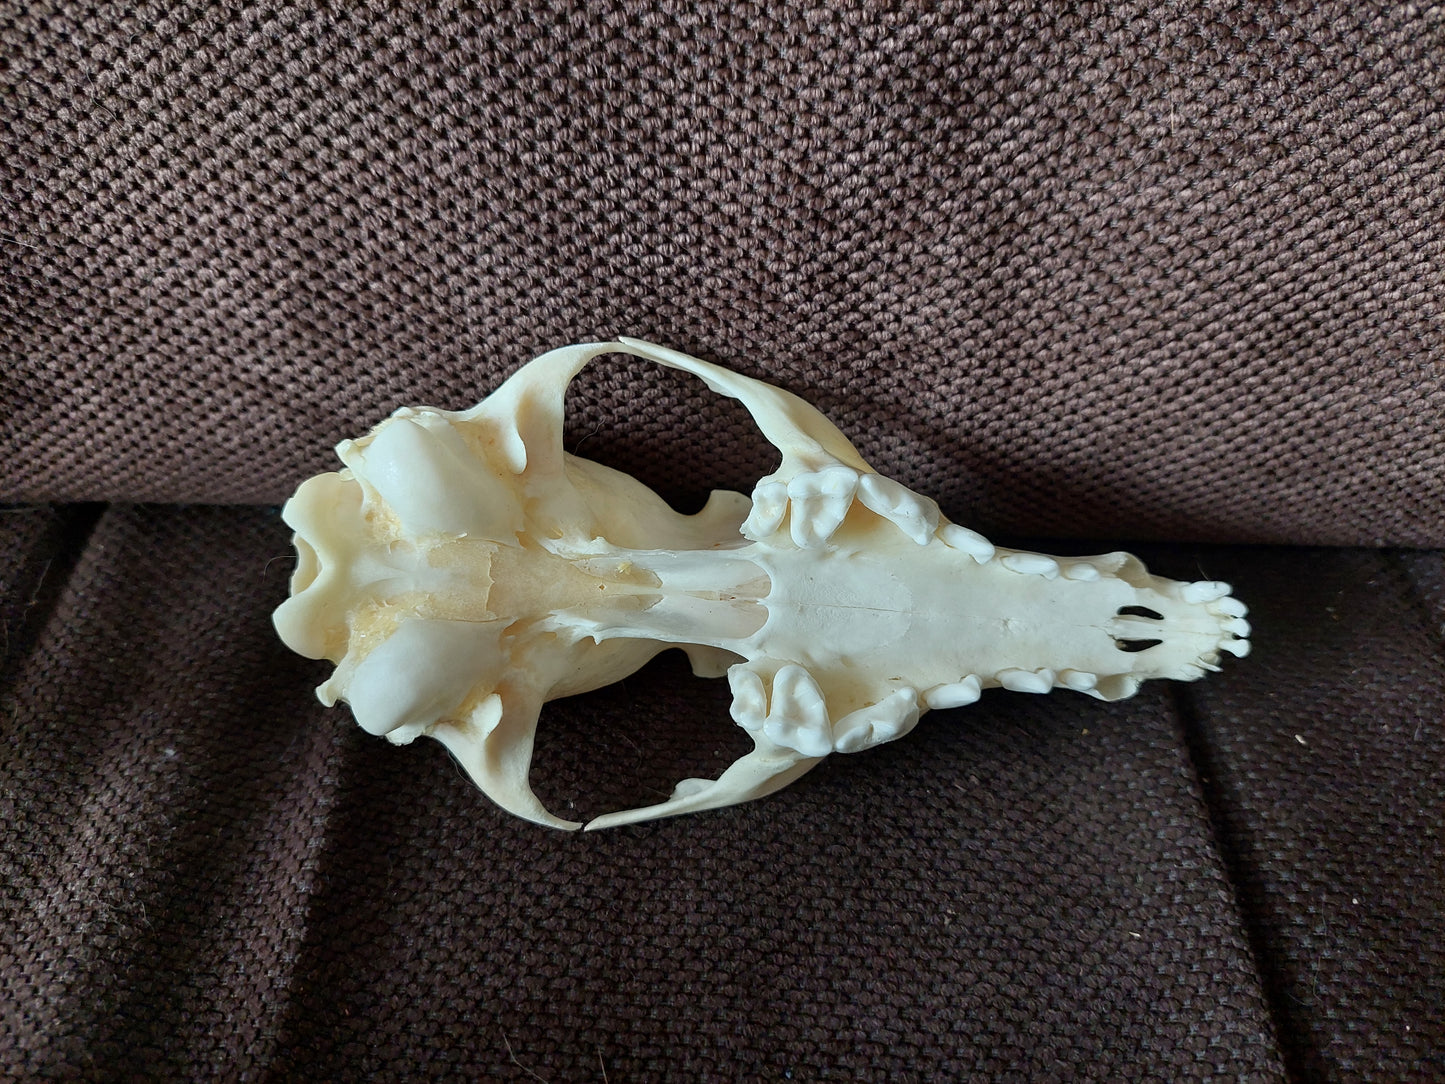 Fox upper skull #3